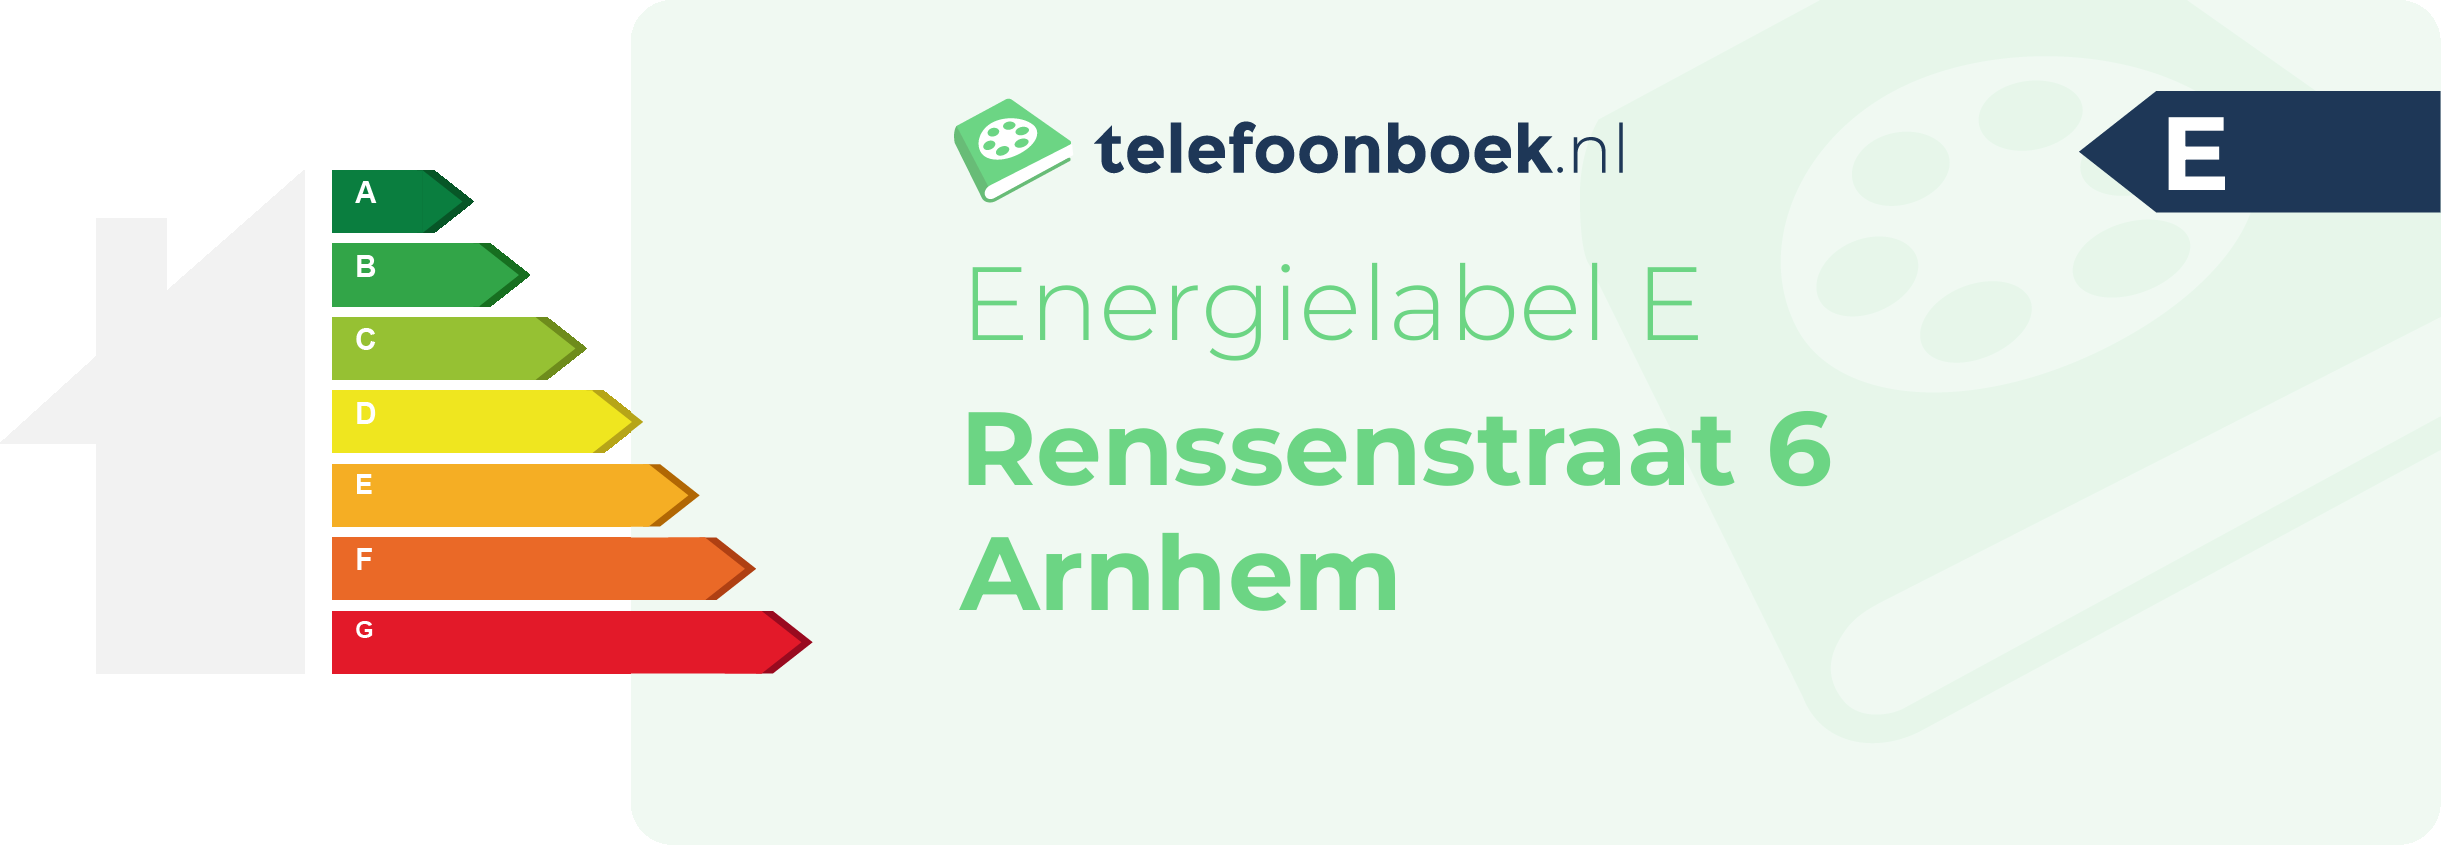 Energielabel Renssenstraat 6 Arnhem